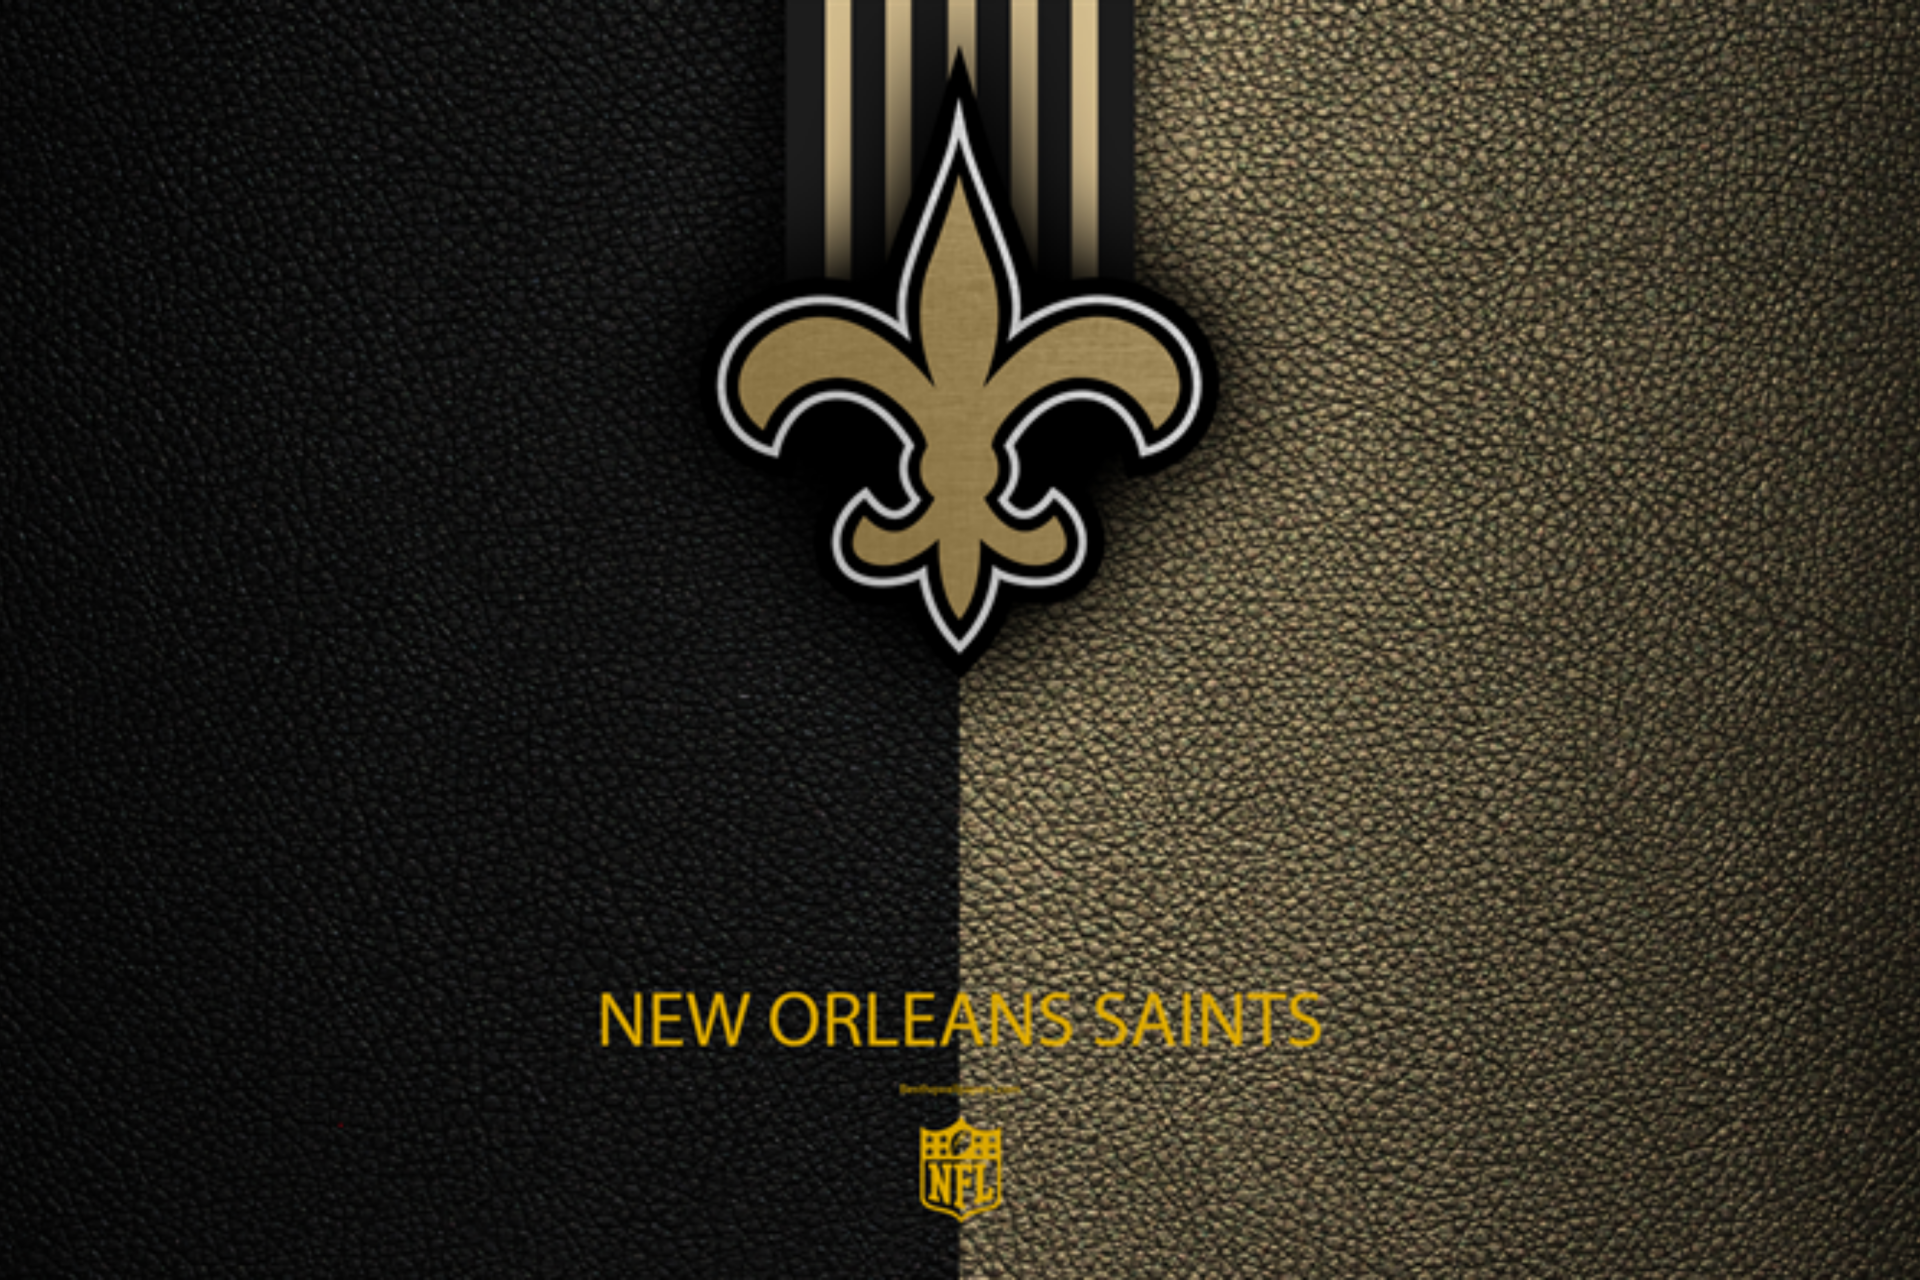 the New Orleans Saints logo